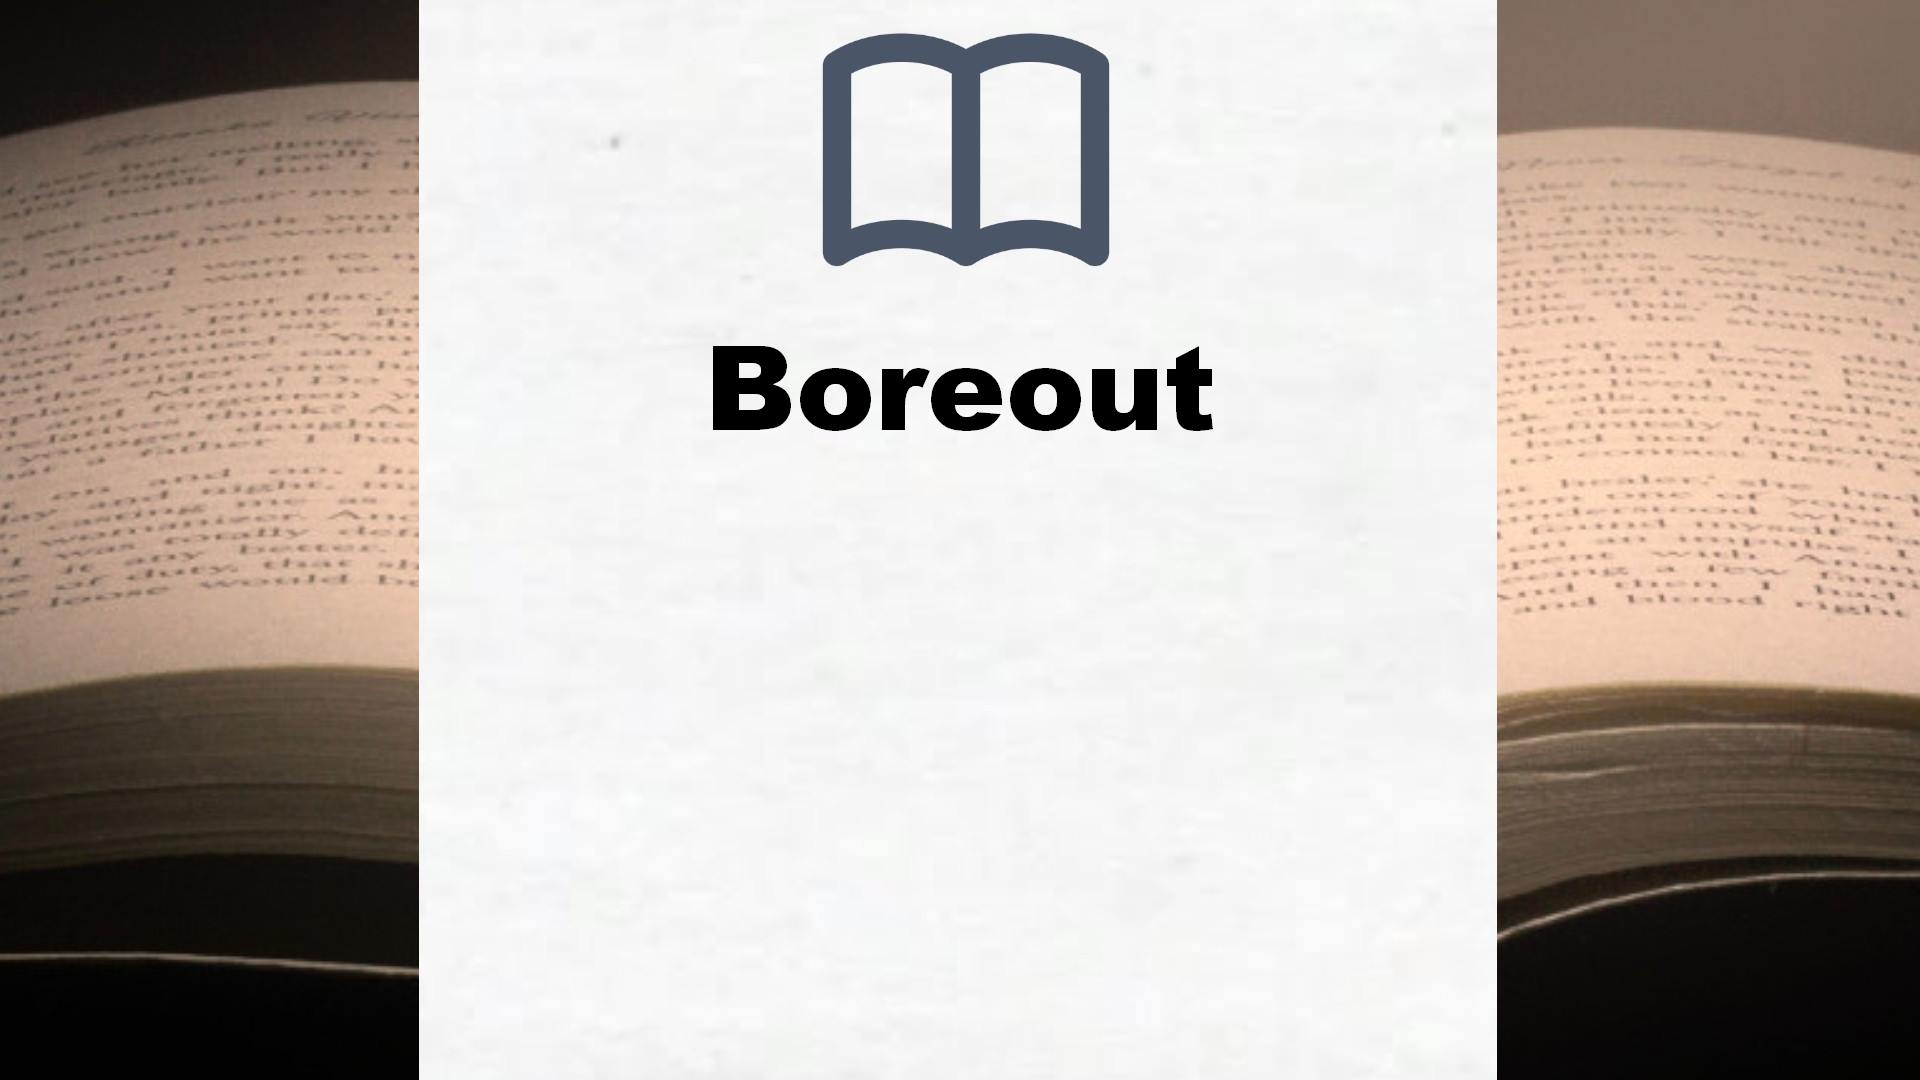 Bücher über Boreout